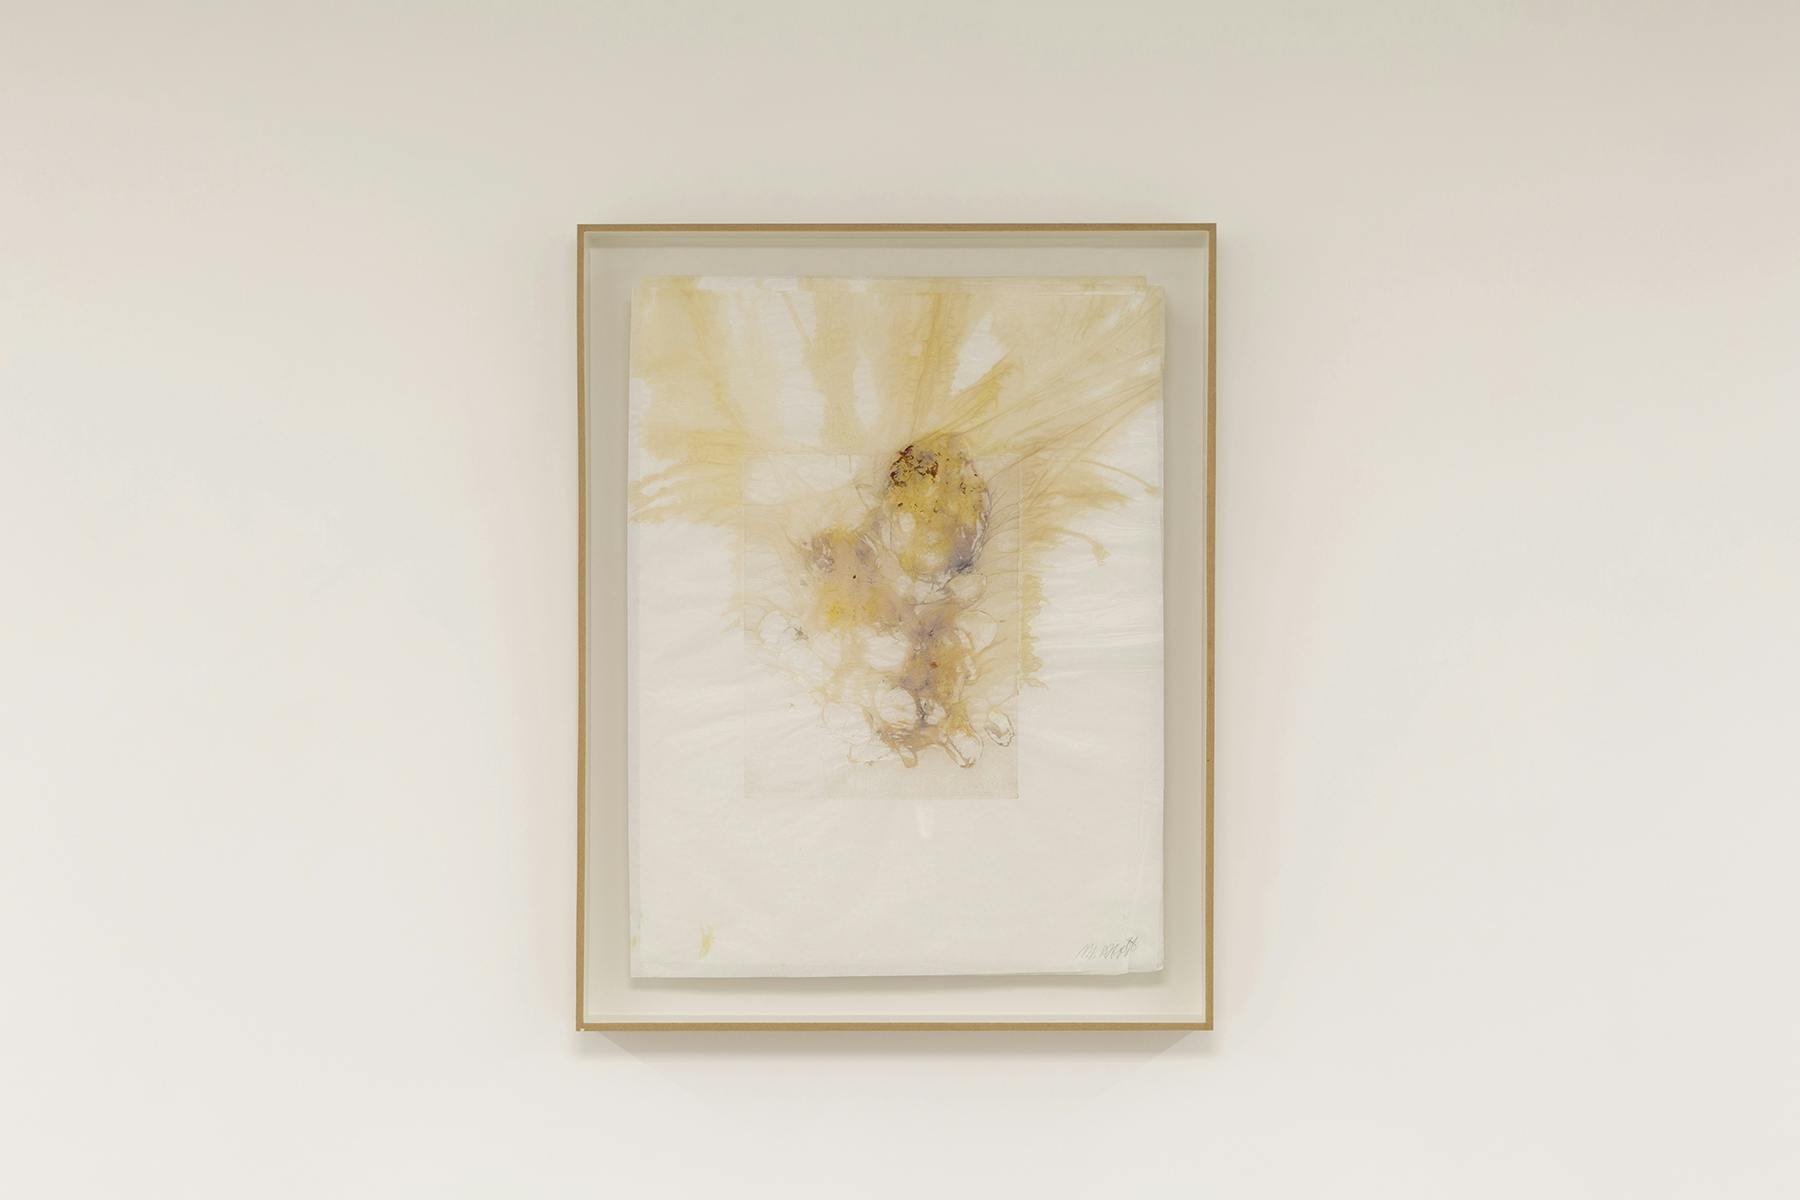 Venus (Tracce di vita), 2021, monostampa, fuori su carta, 46 x 45 cm